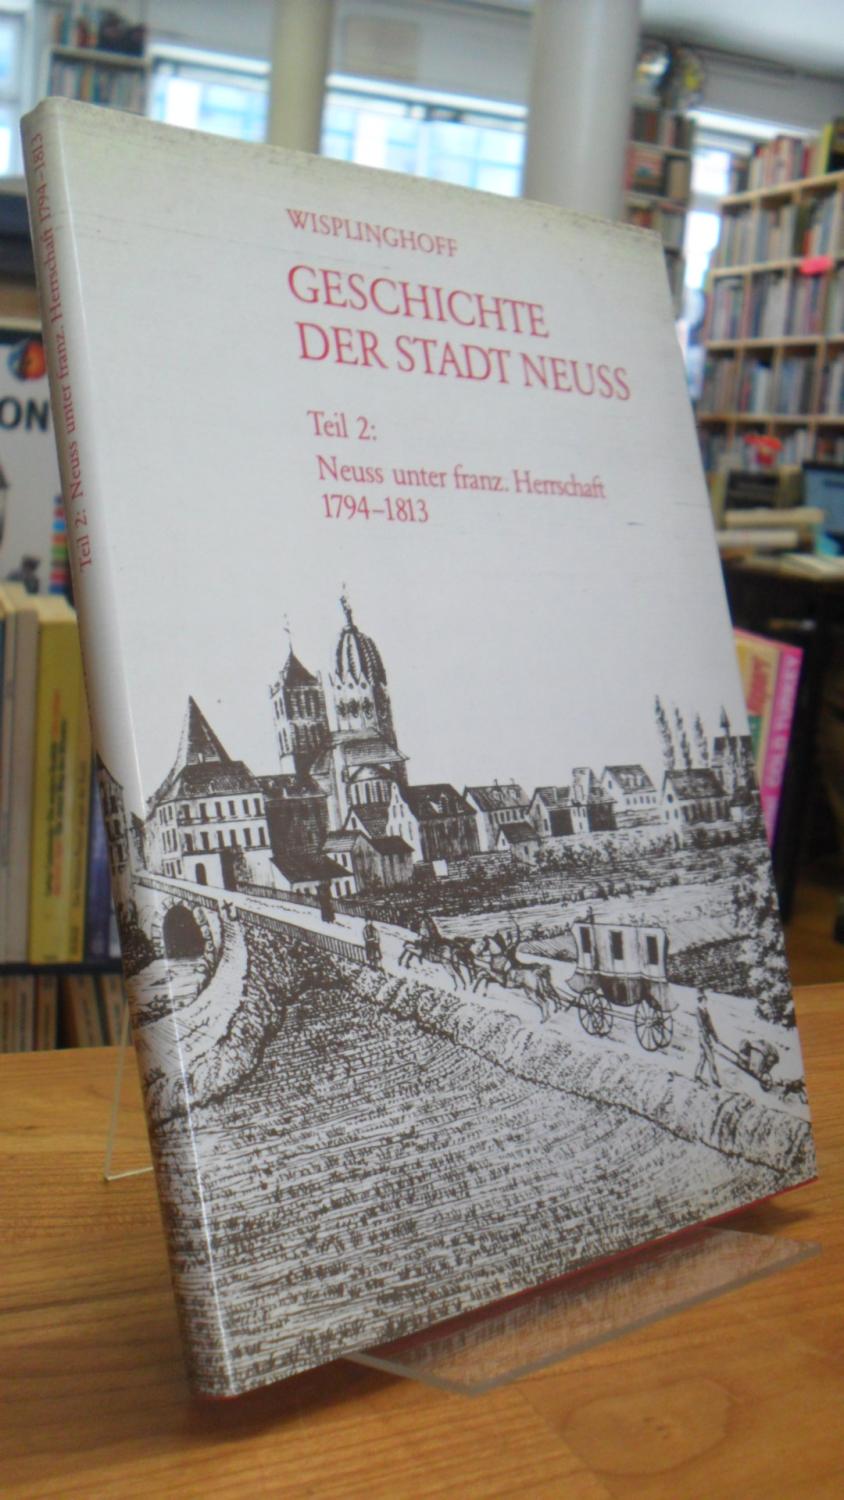 Geschichte der Stadt Neuss - Teil 2: Neuss unter französischer Herrschaft 1794 - 1813, - Neuss / Wisplinghoff, Erich,